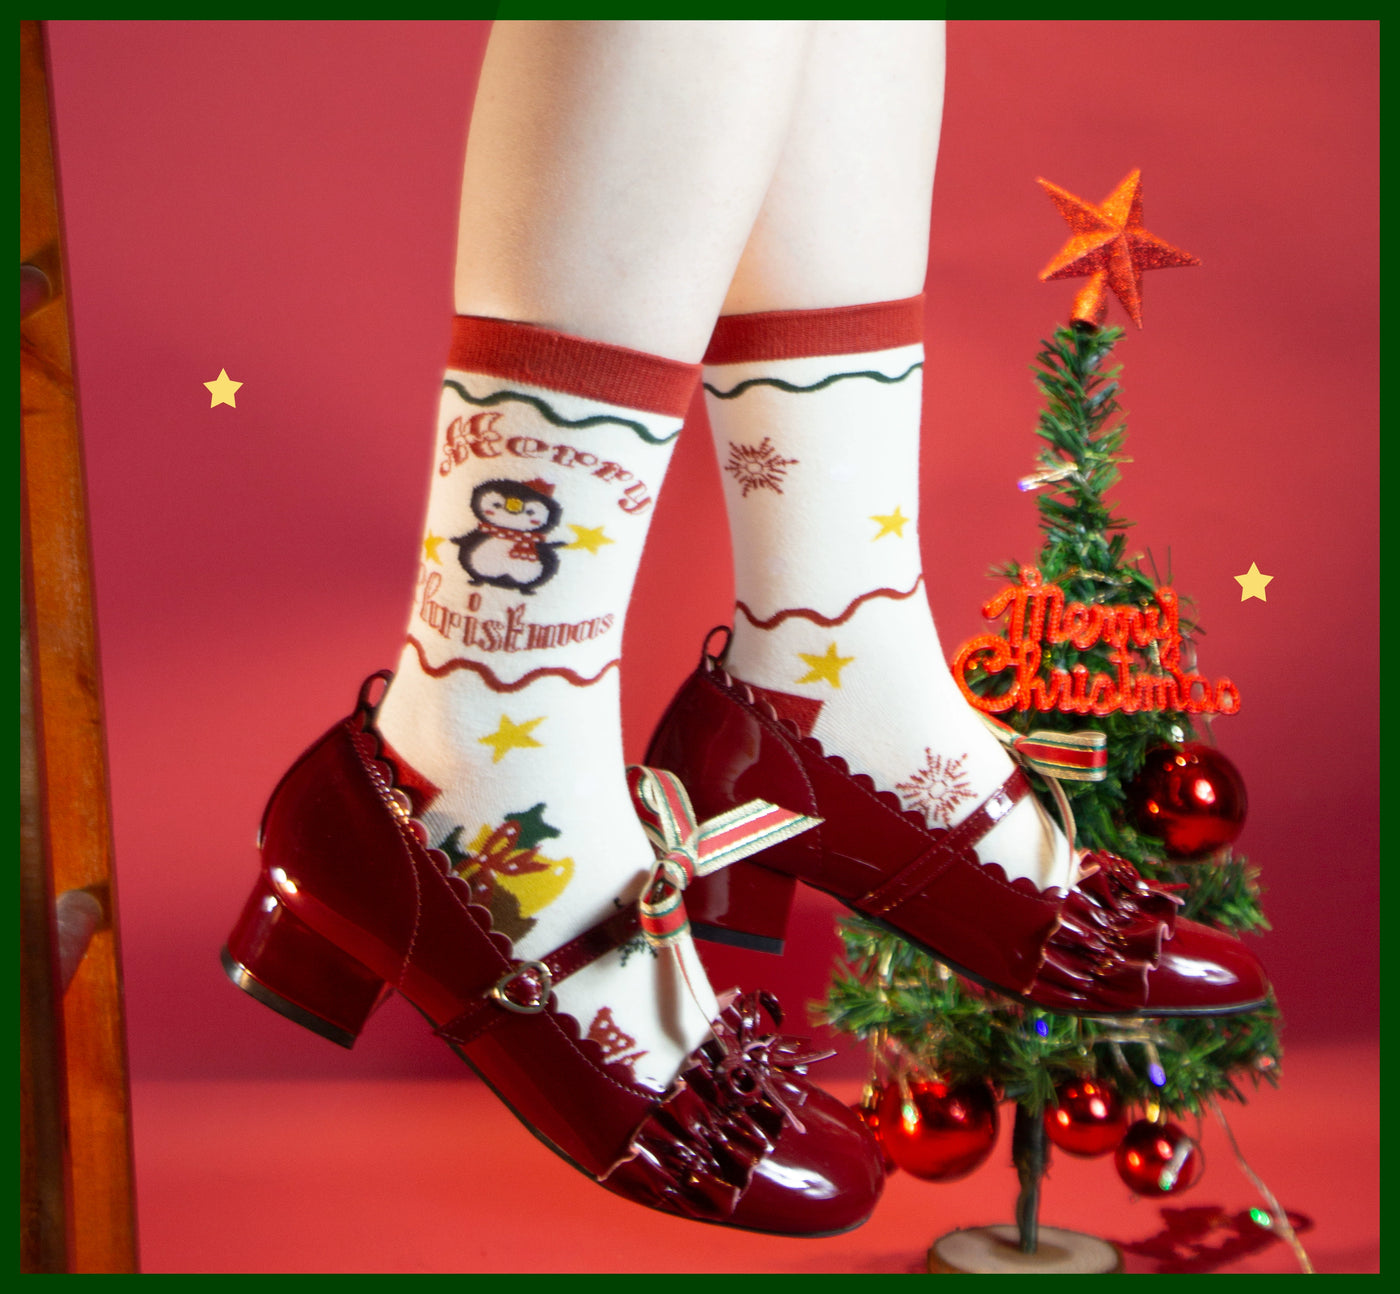 Yukines Box~Kawaii Lolita Cotton Socks for Christmas   